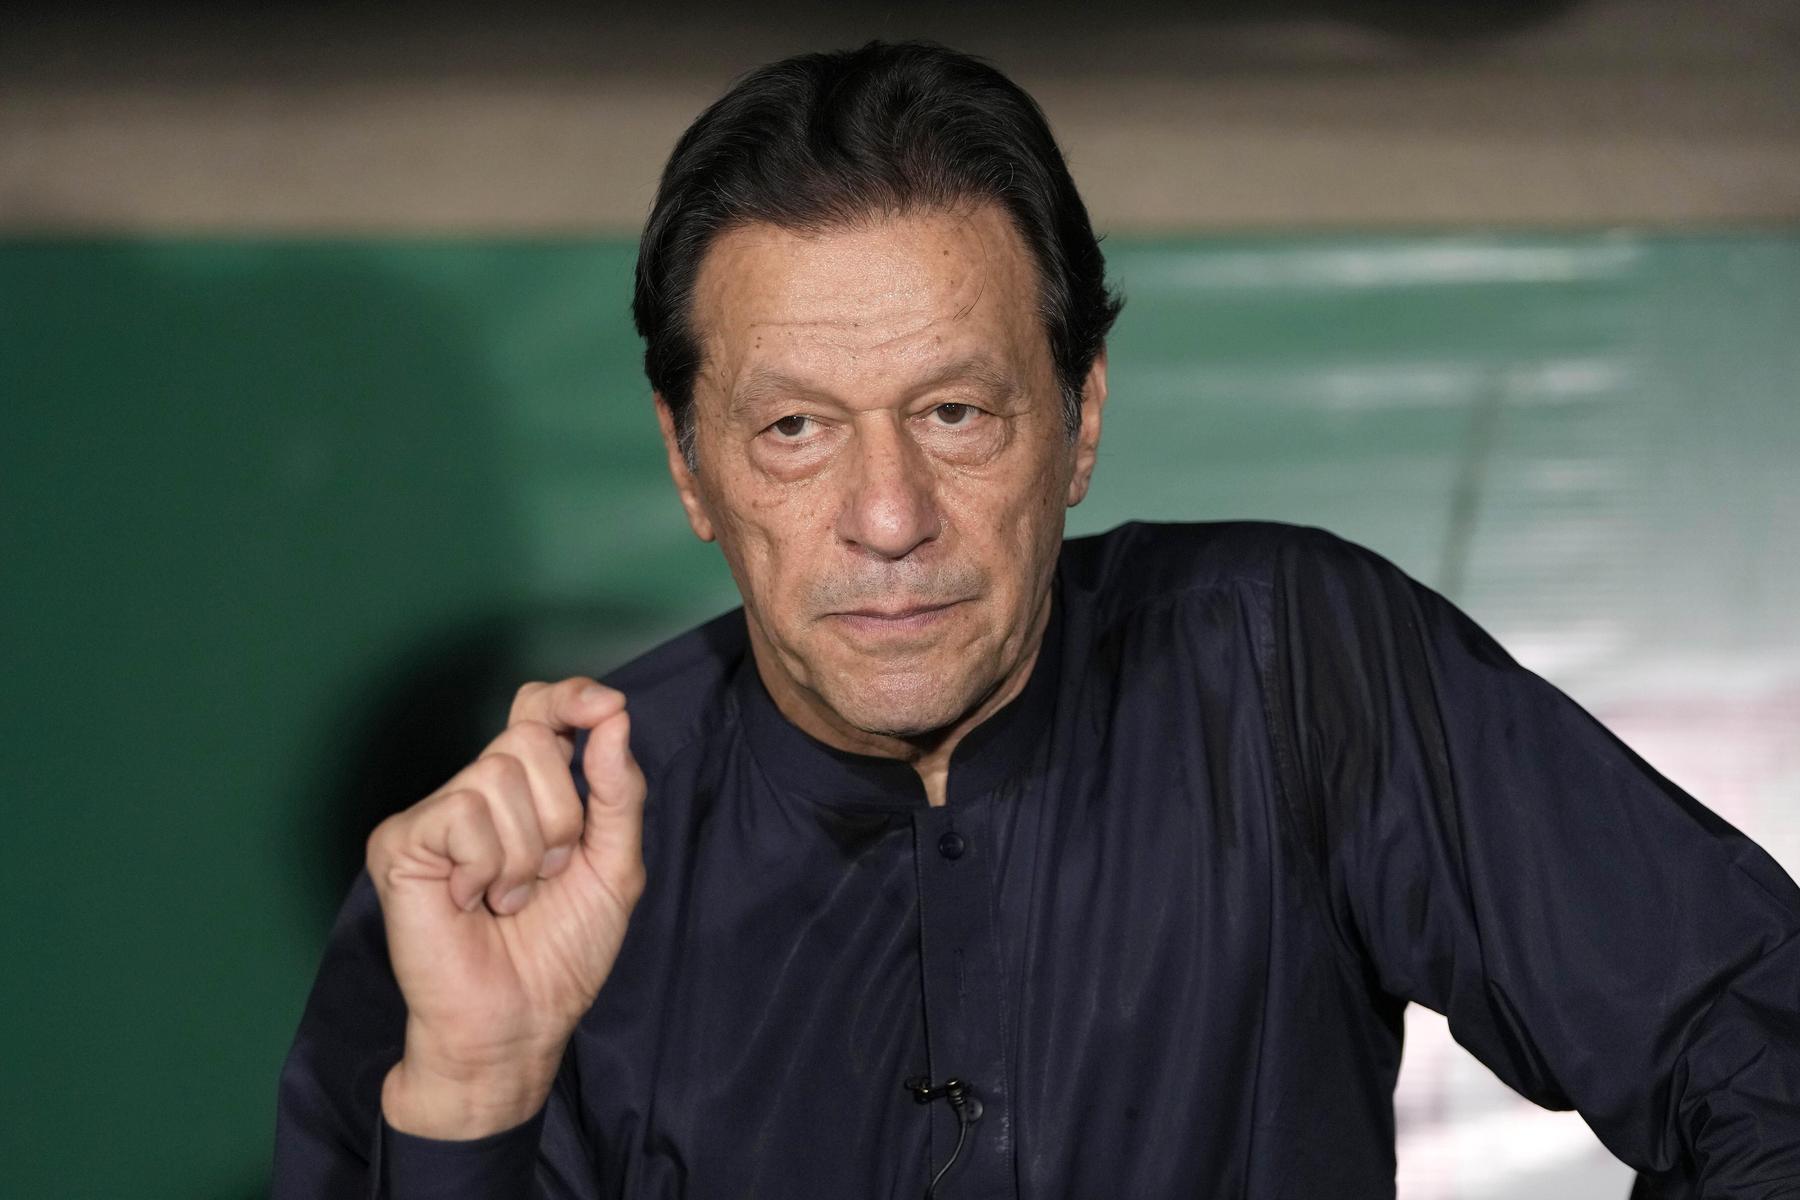 Pakistan: Regierung will wichtigste Oppositionspartei von Khan verbieten